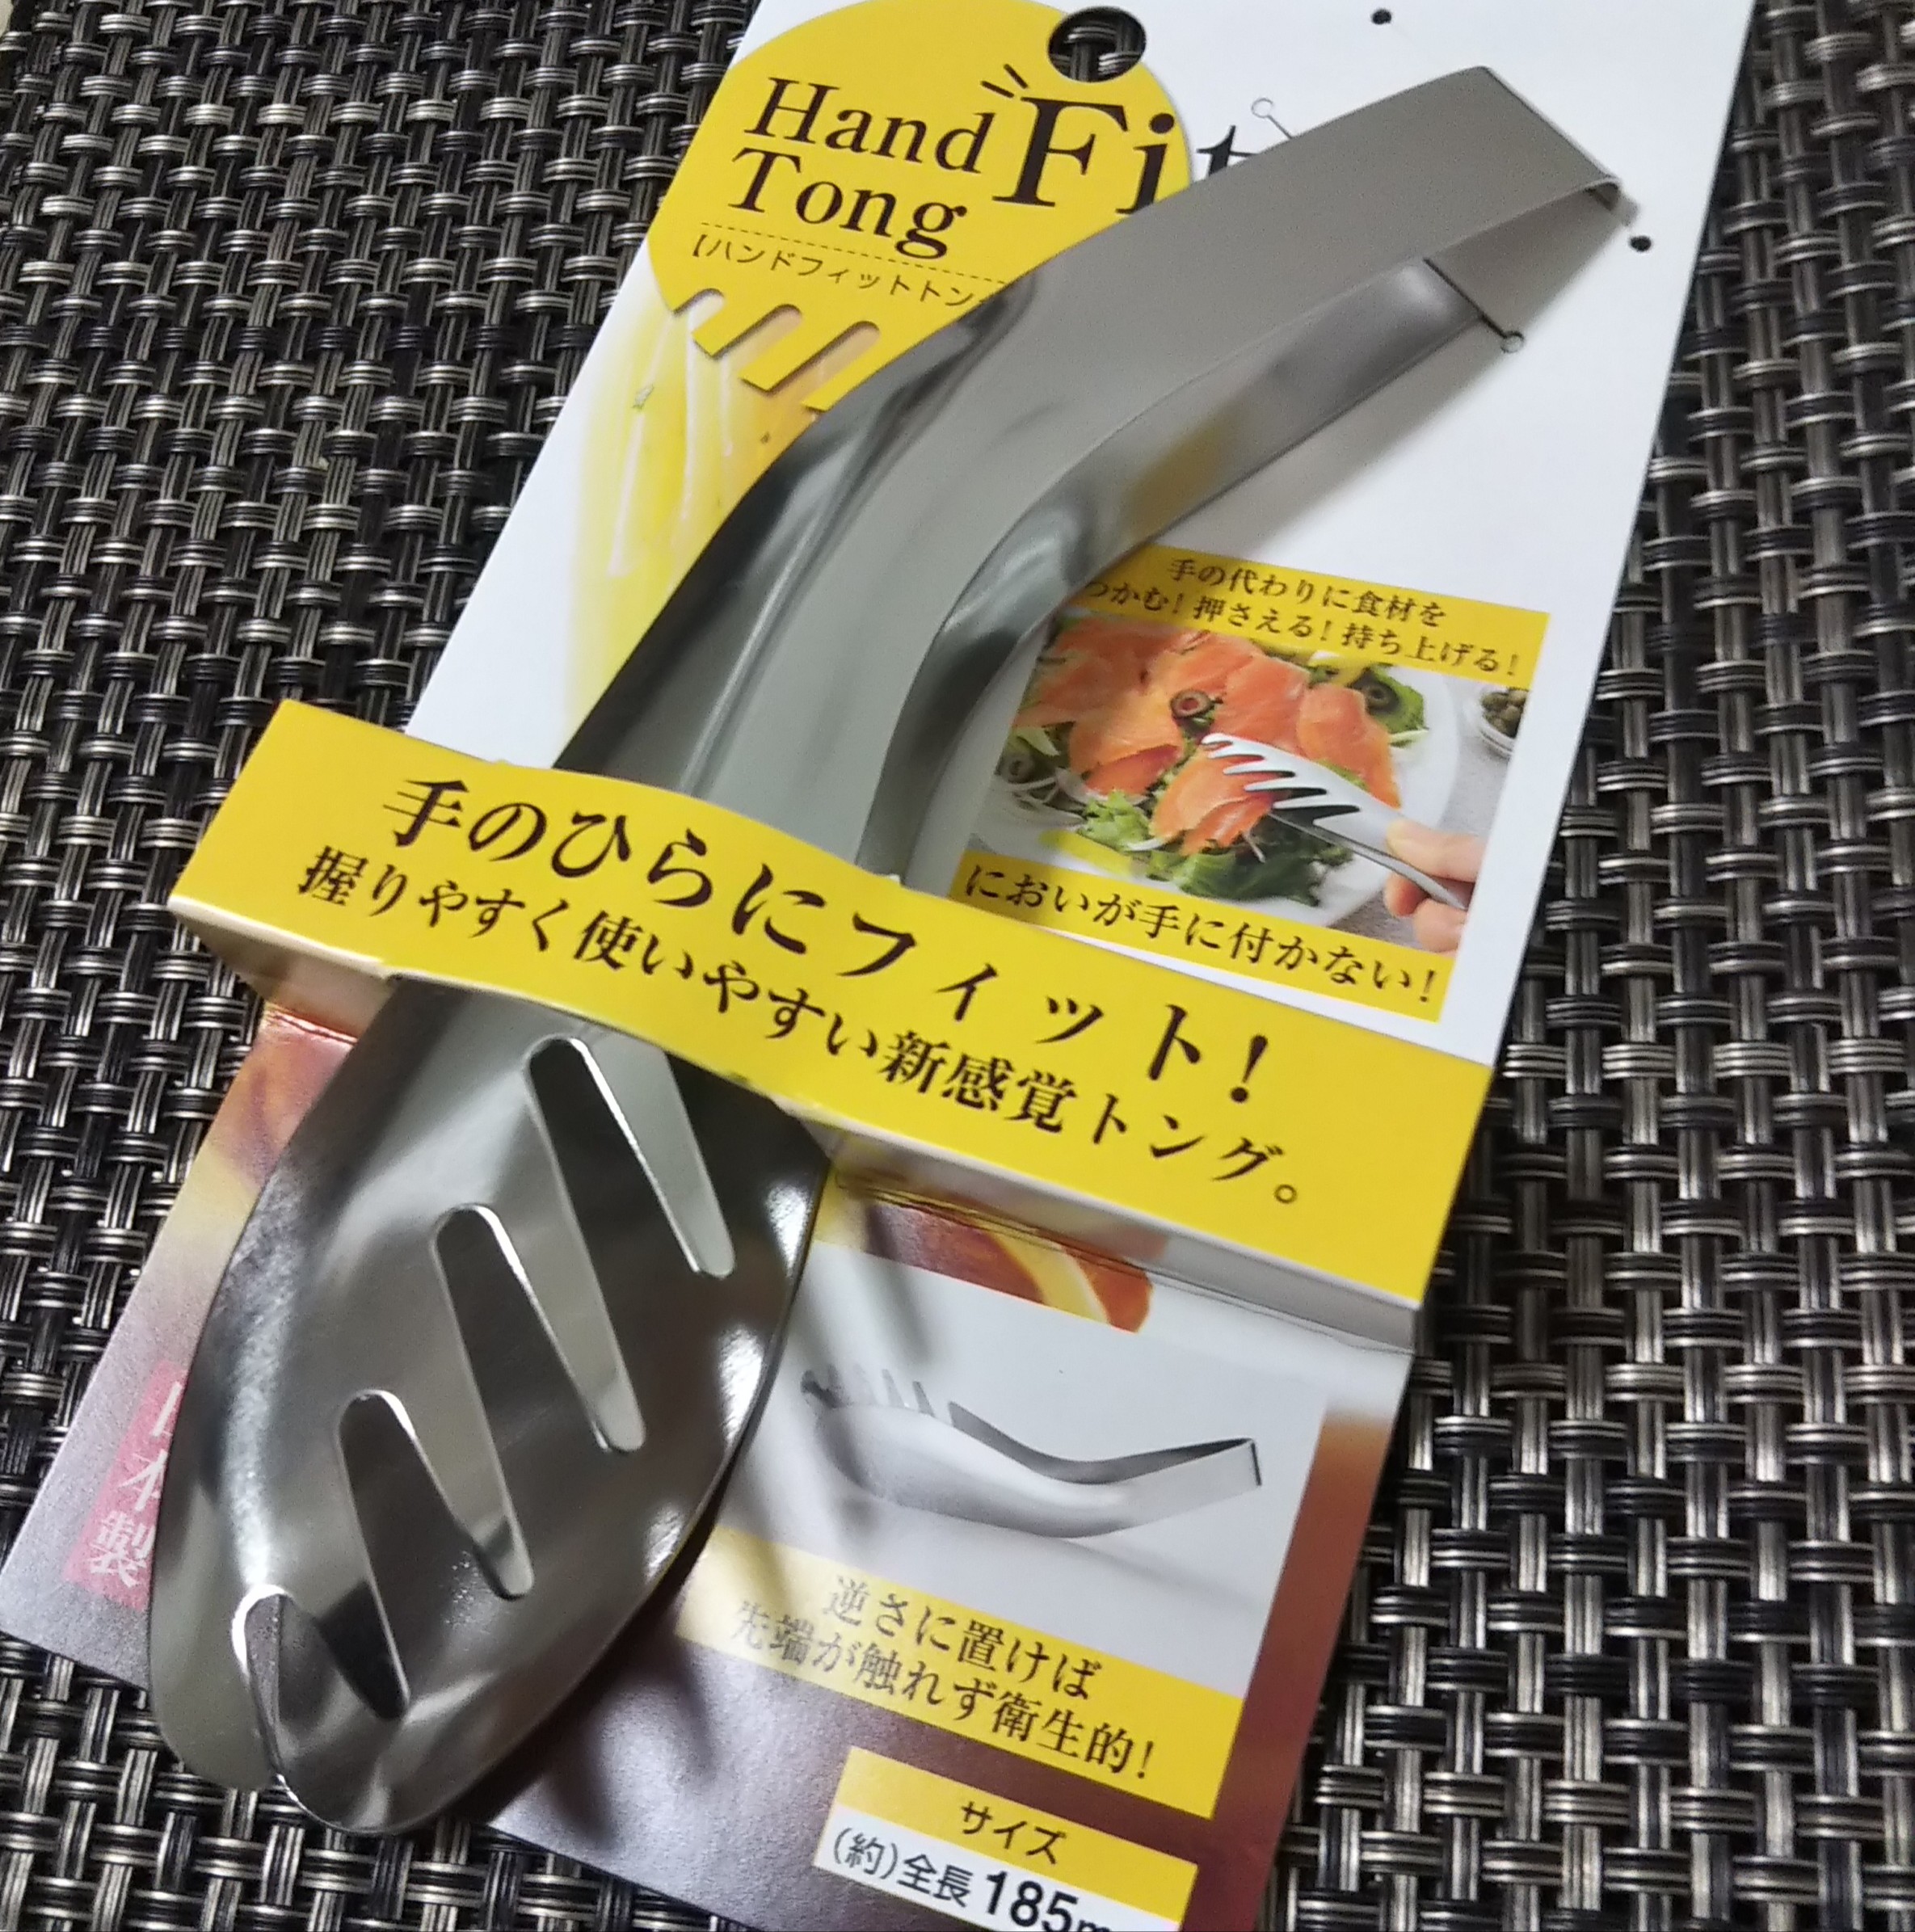 Kẹp gắp thực phẩm mini Echo Hand Fit 185mm - Hàng nội địa Nhật Bản, nhập khẩu chính hãng (#Made in Japan)